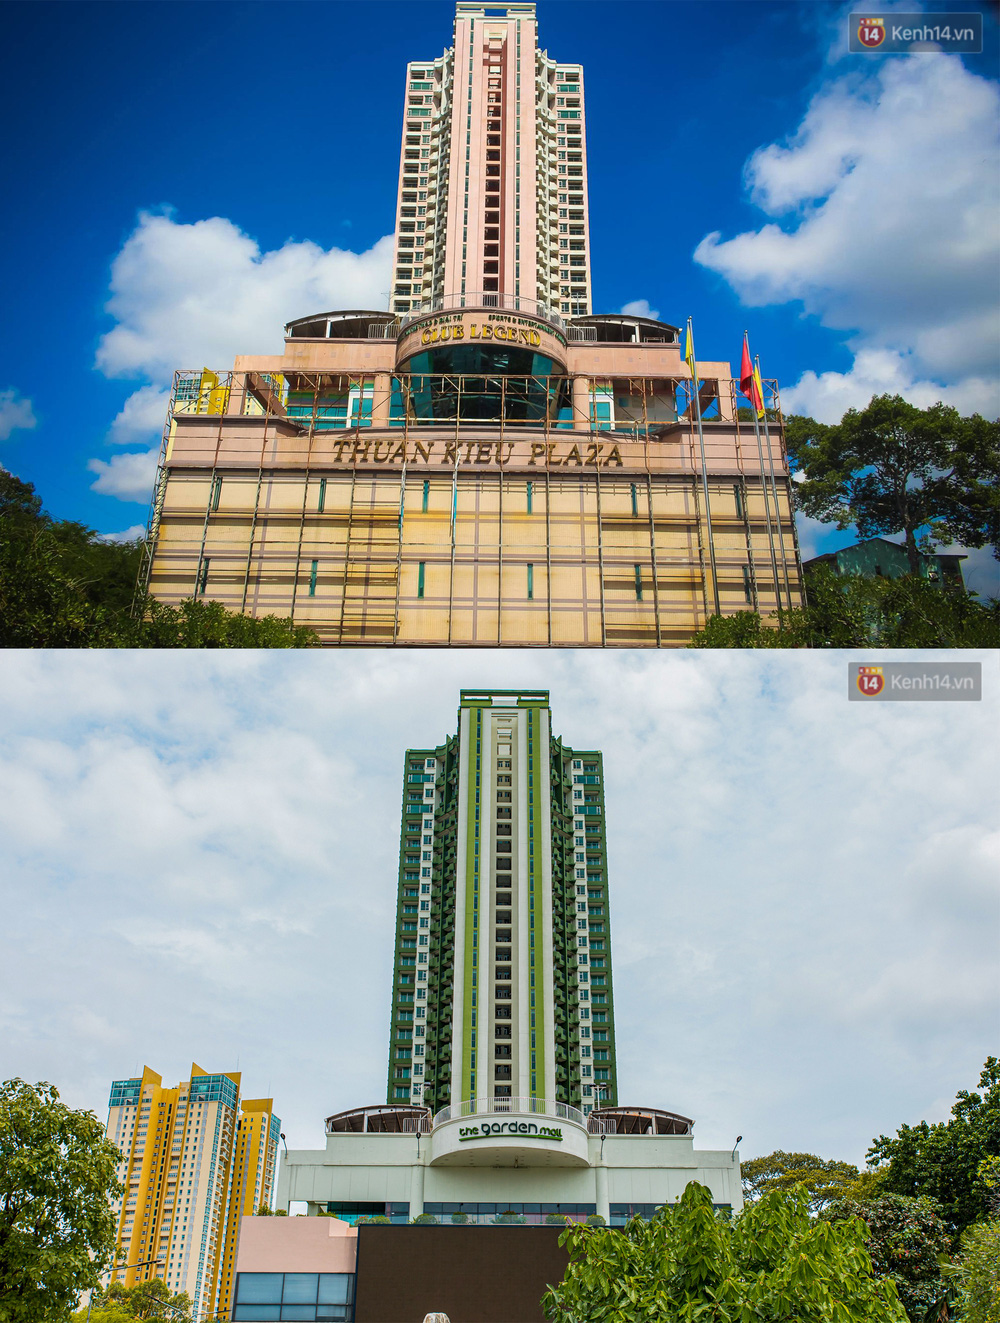 Cận cảnh toà nhà Thuận Kiều Plaza, nơi chuẩn bị được trưng dụng làm bệnh viện dã chiến điều trị Covid-19-22